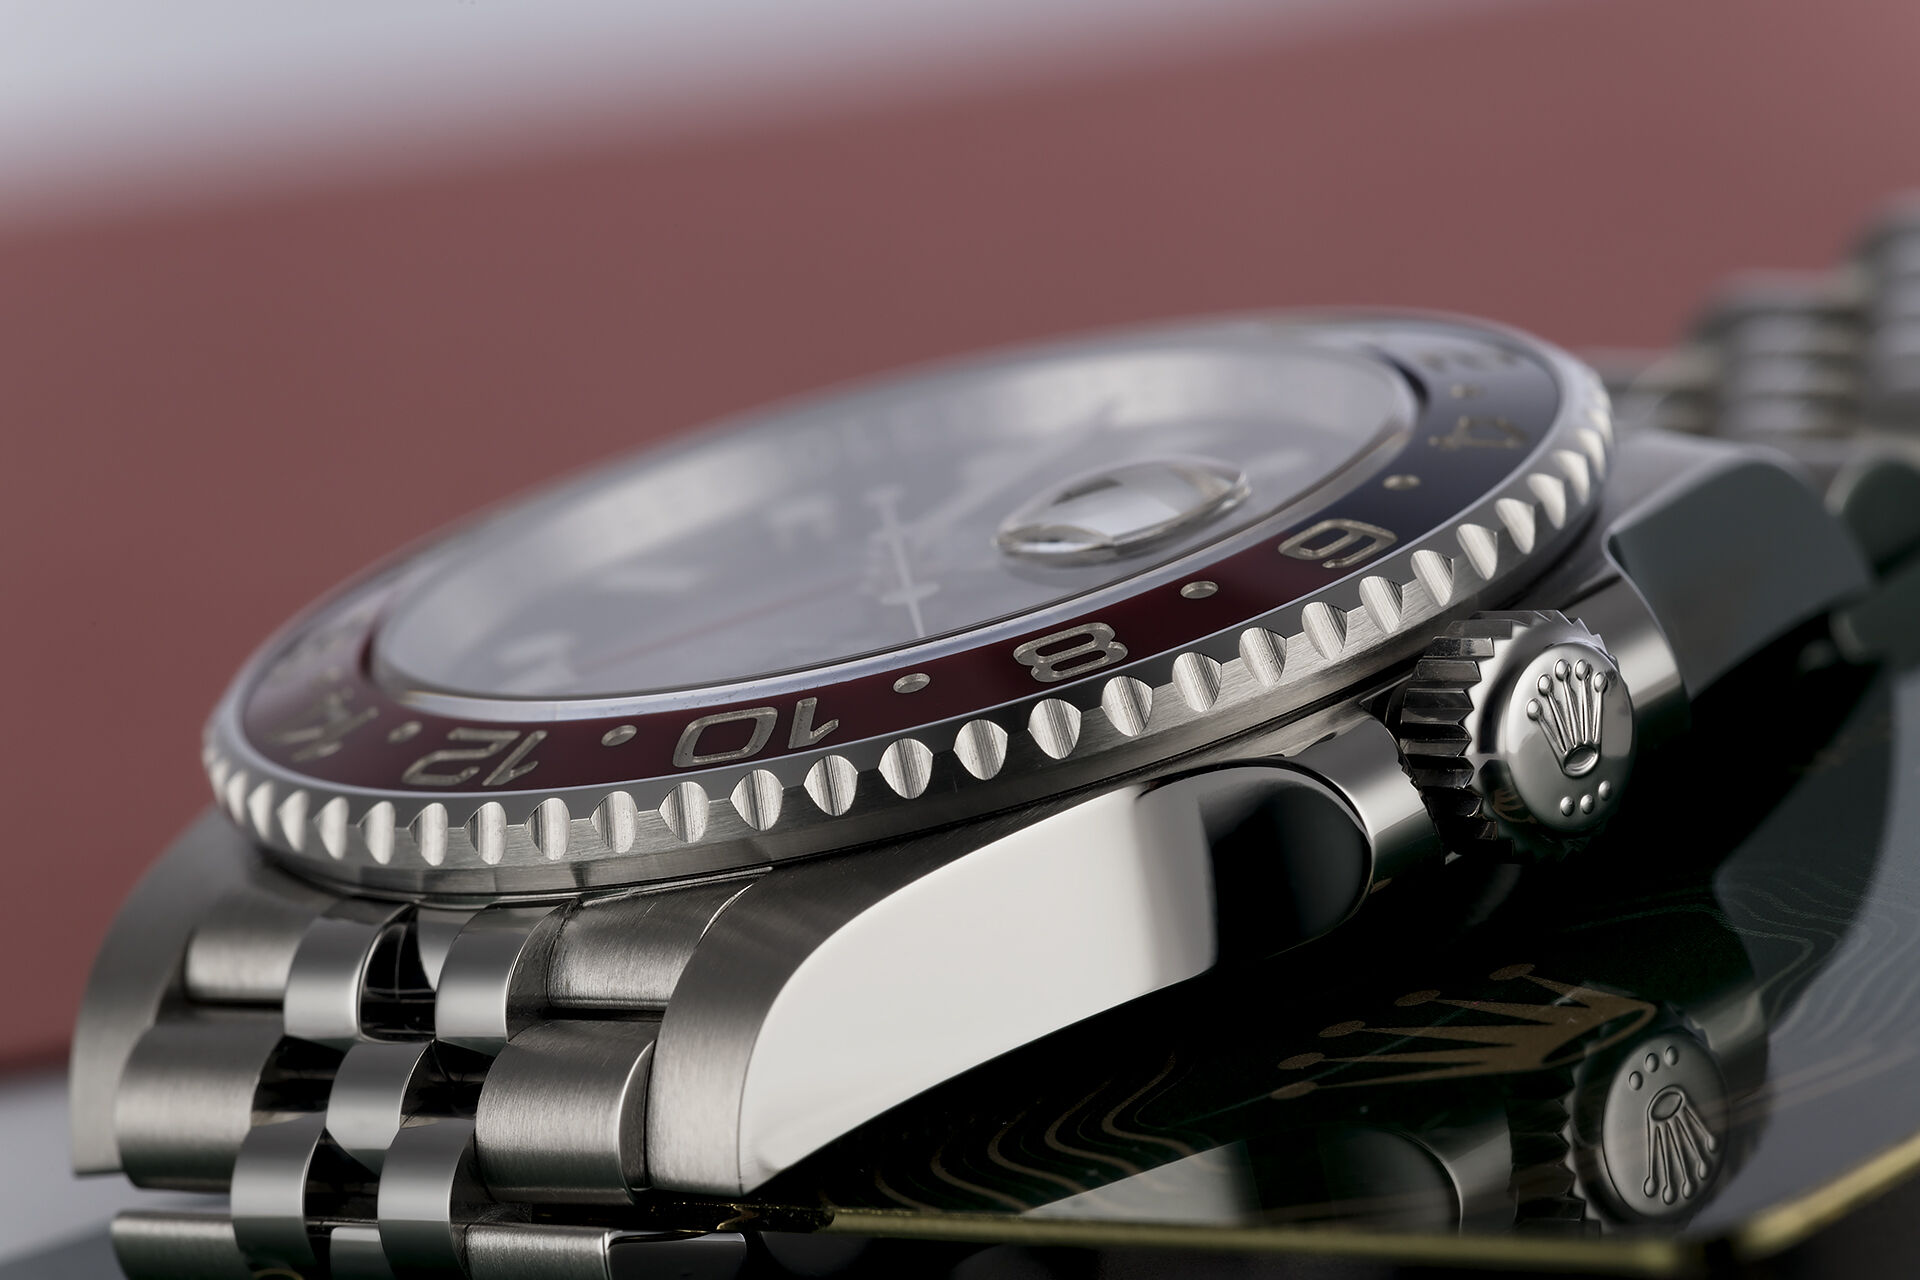 ref 126710BLRO | 5 Year Rolex Warranty | Rolex GMT-Master II